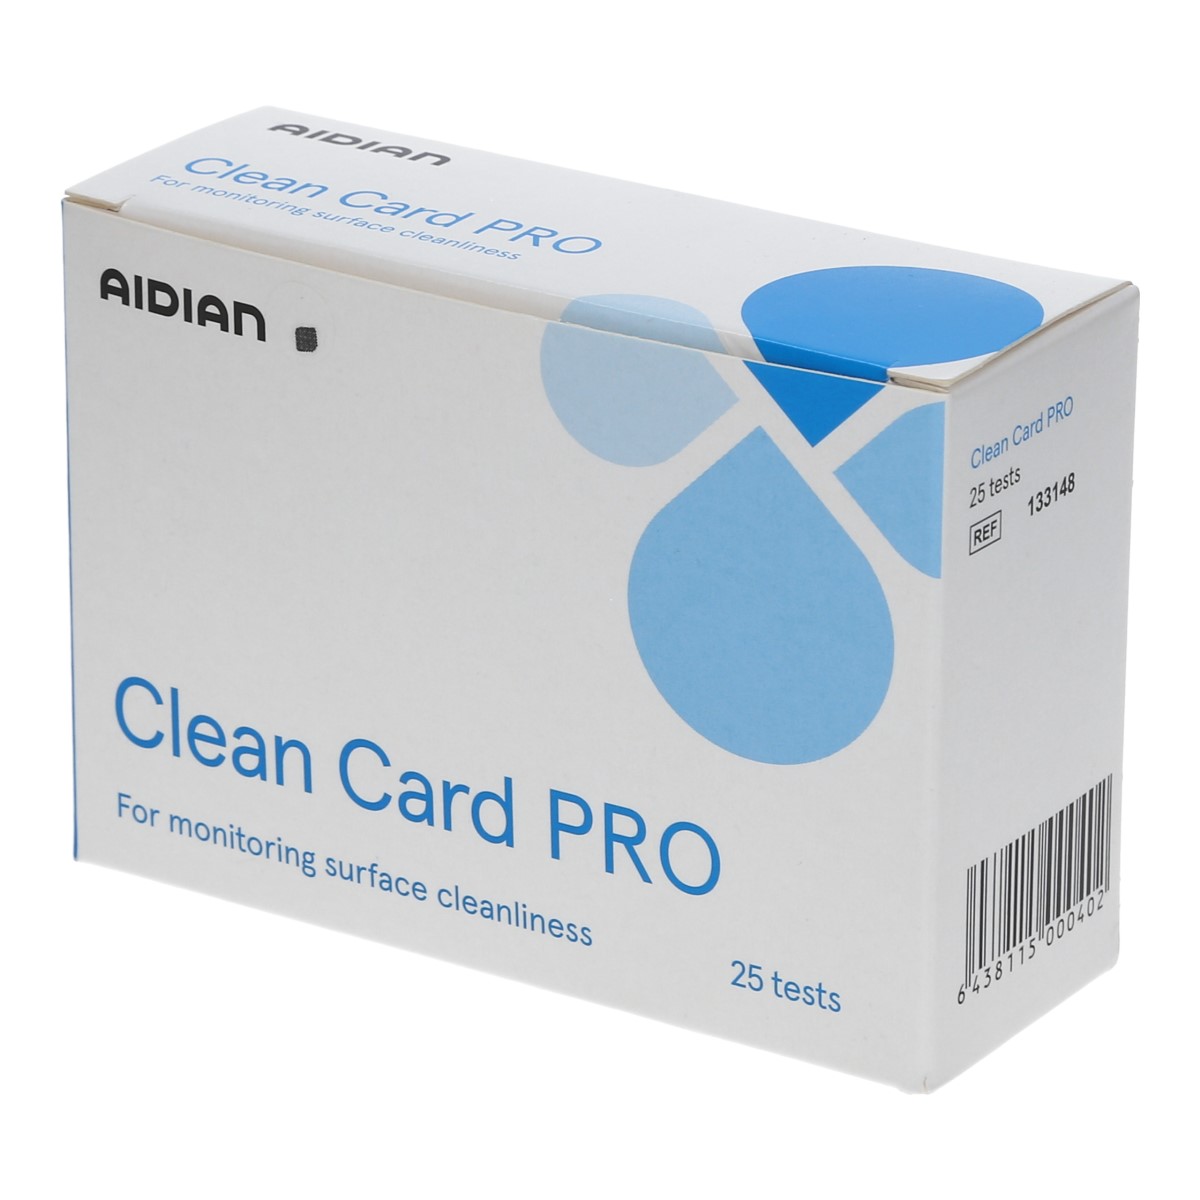 clean card keimindikatoren starter kit proteintest Karton s